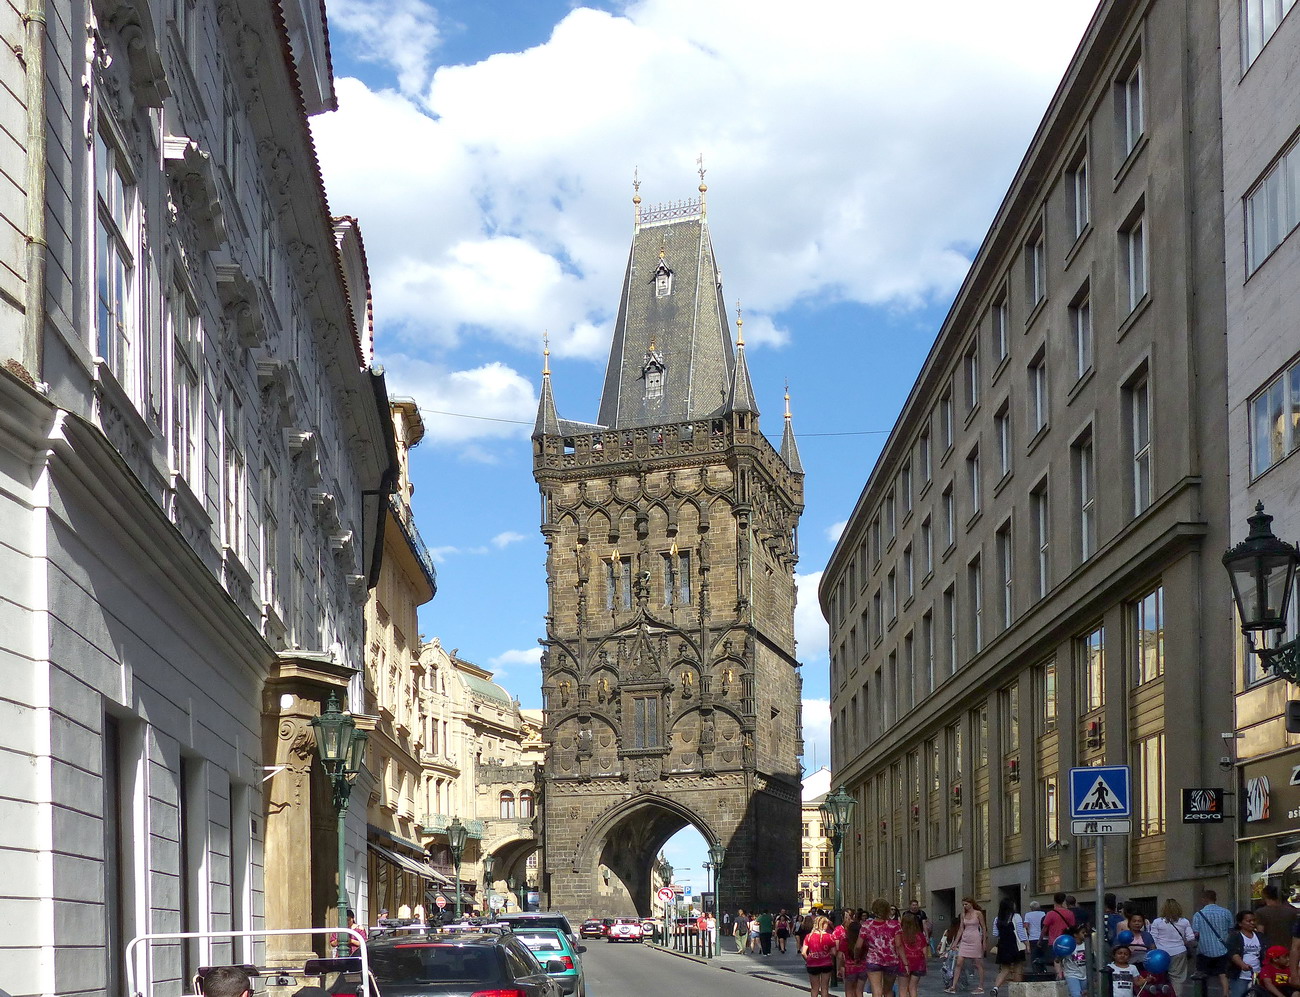 Prag - Der Pulverturm